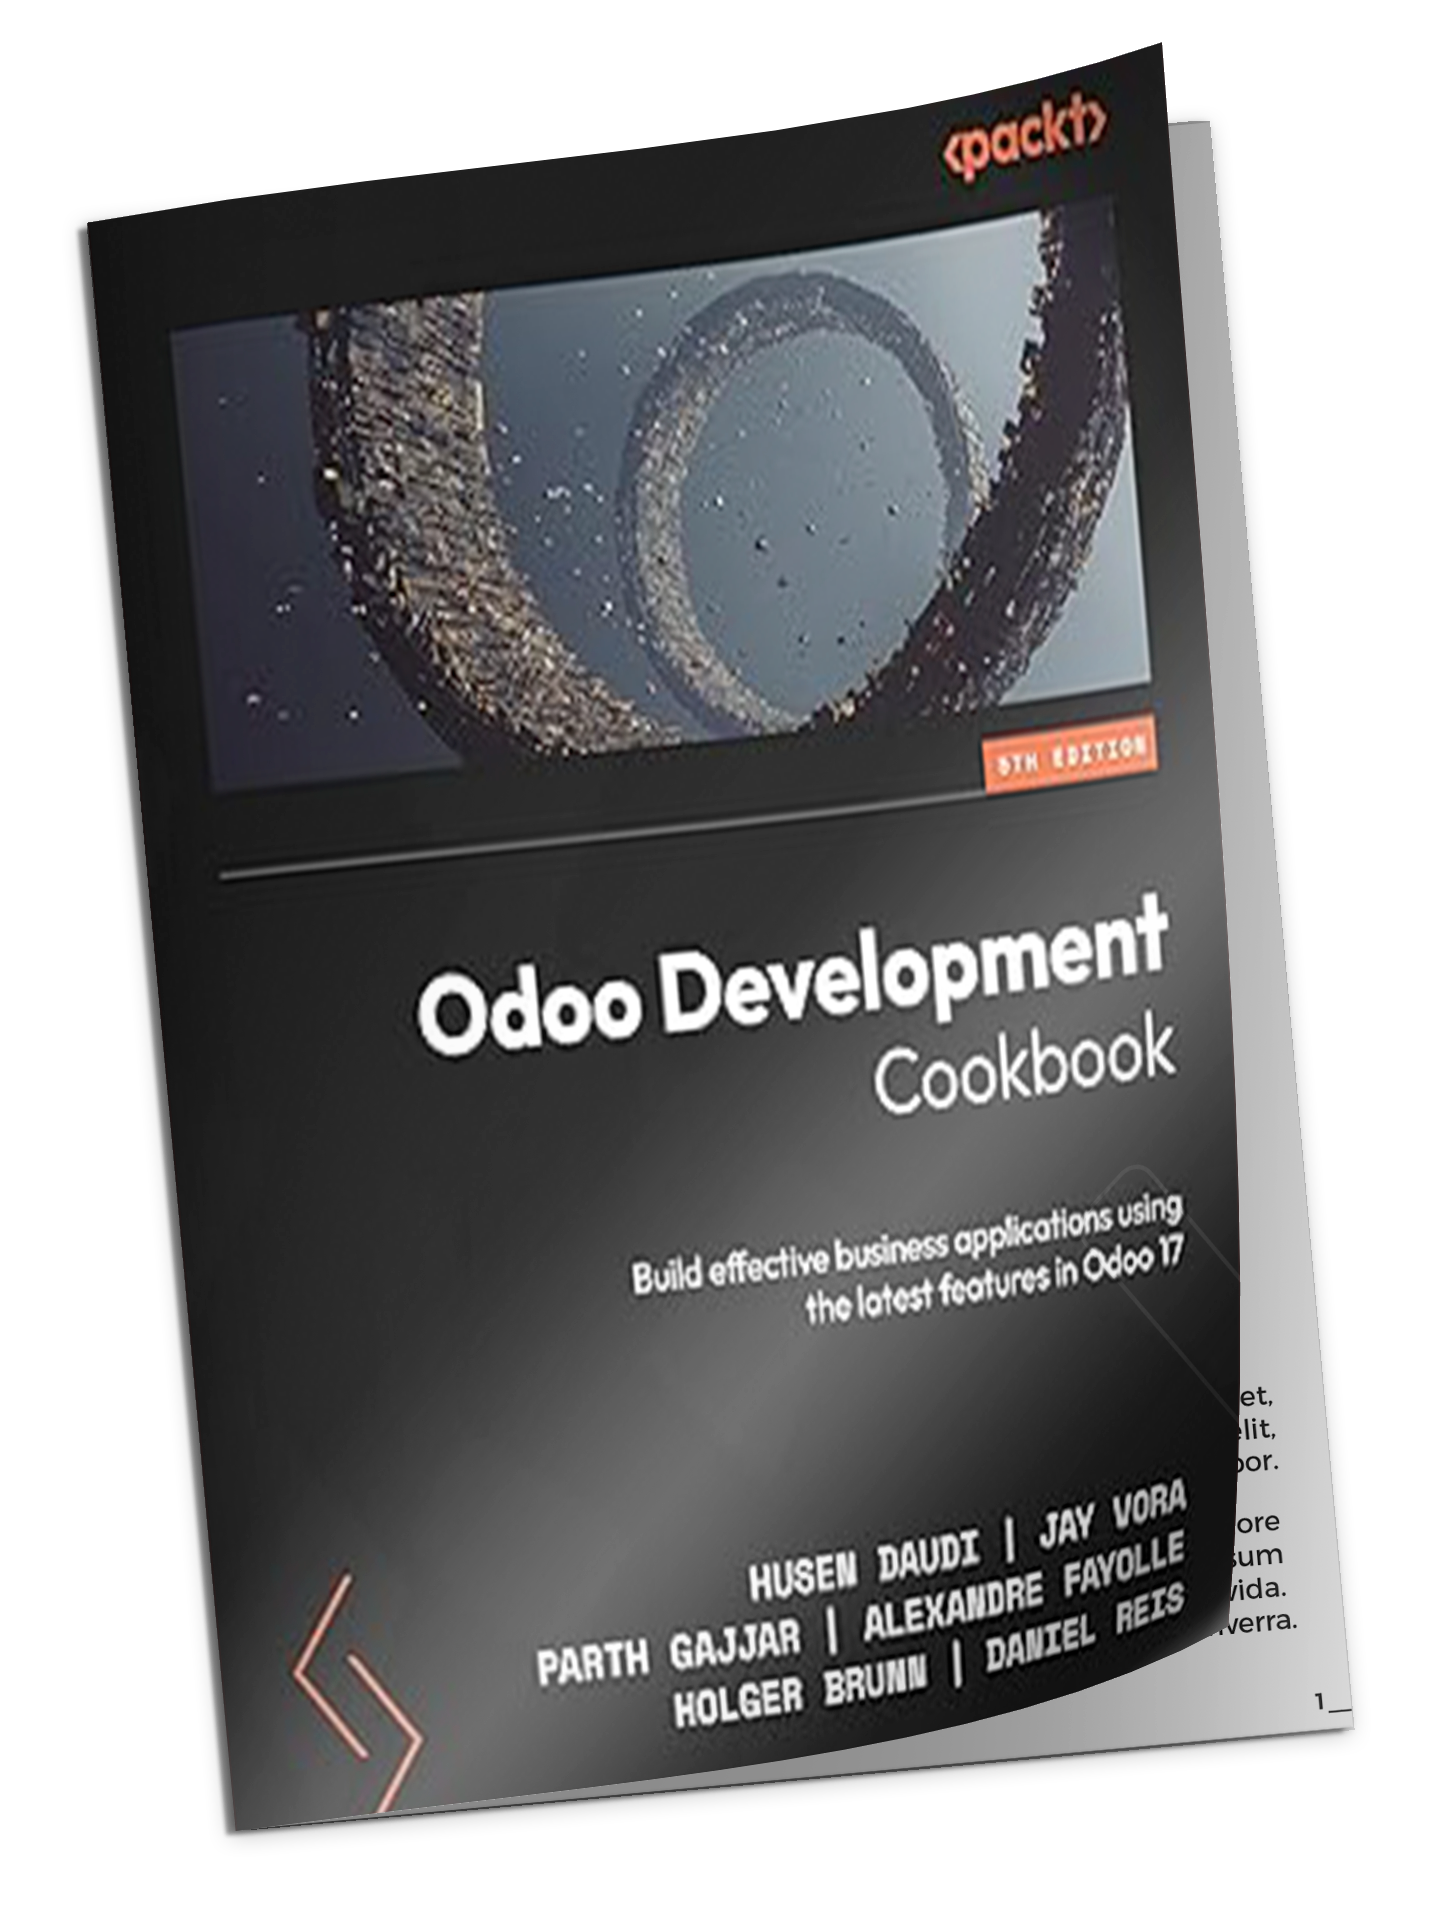 odoo development Cookbook